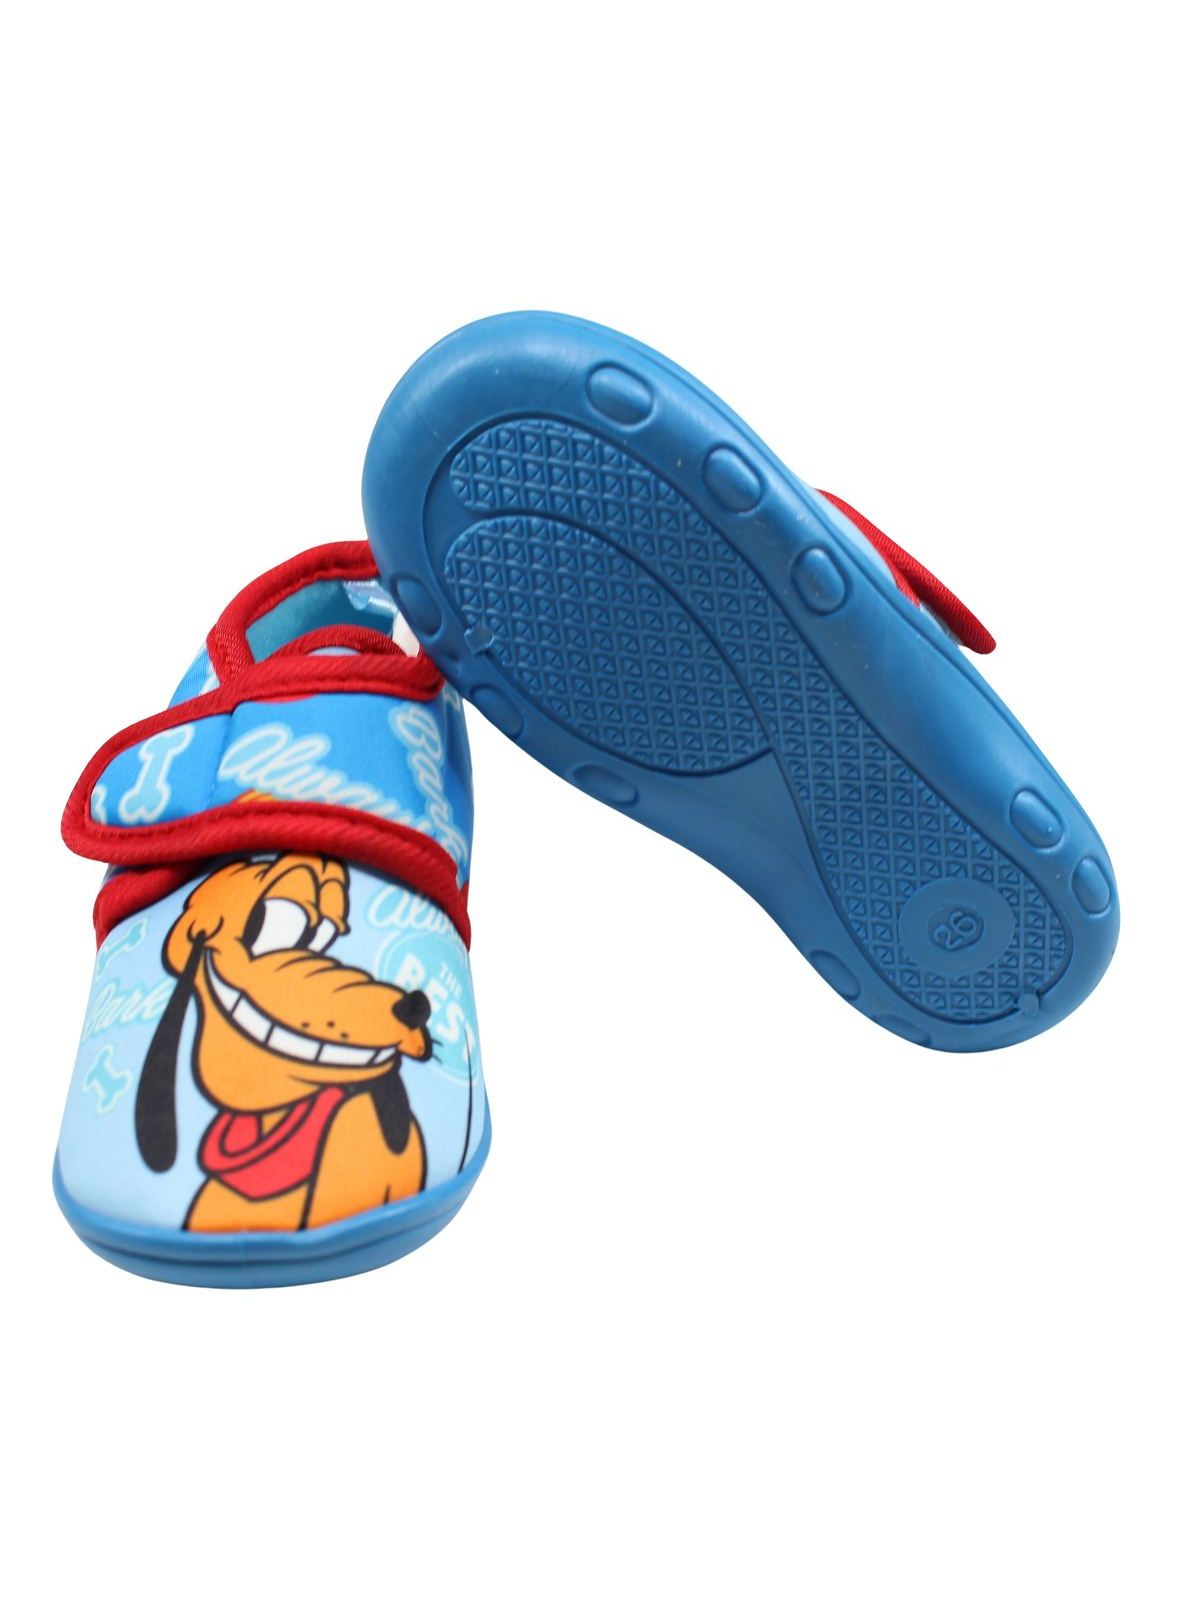 Donald slipper